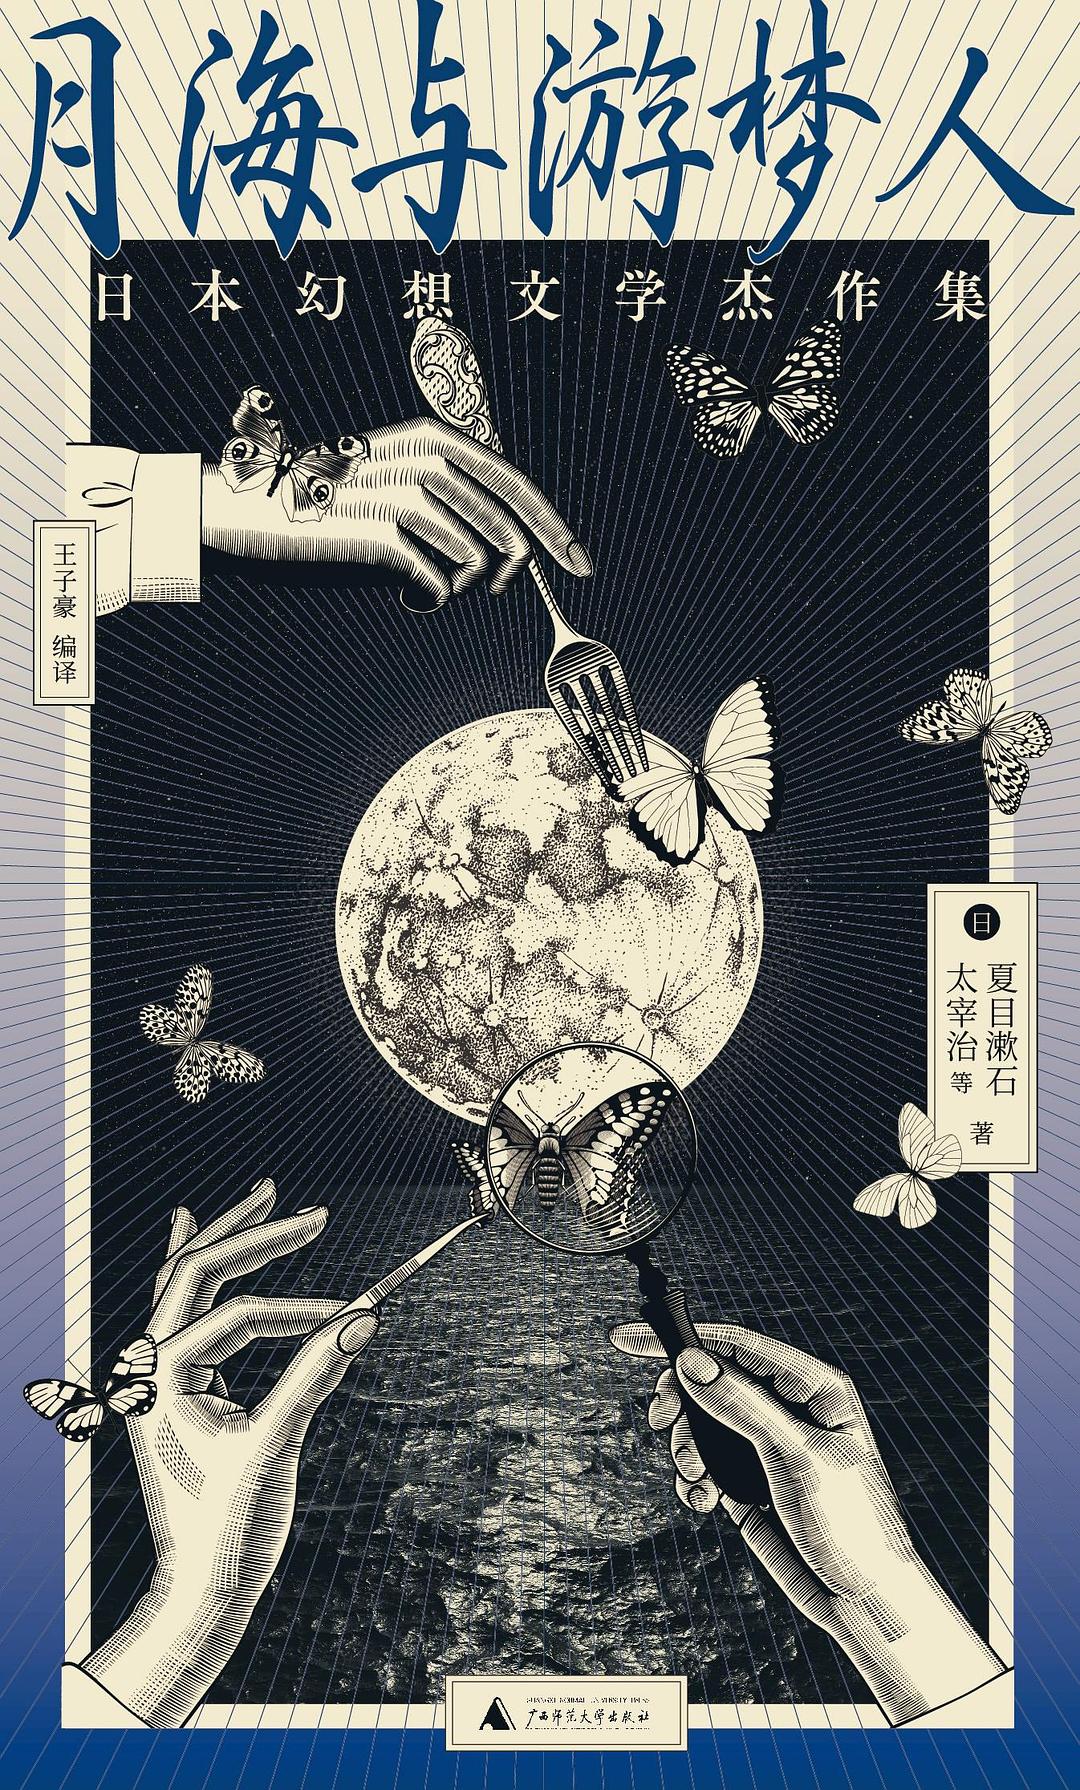 クリアランス割引品 漱石書畫集 夏目漱石 | www.artfive.co.jp